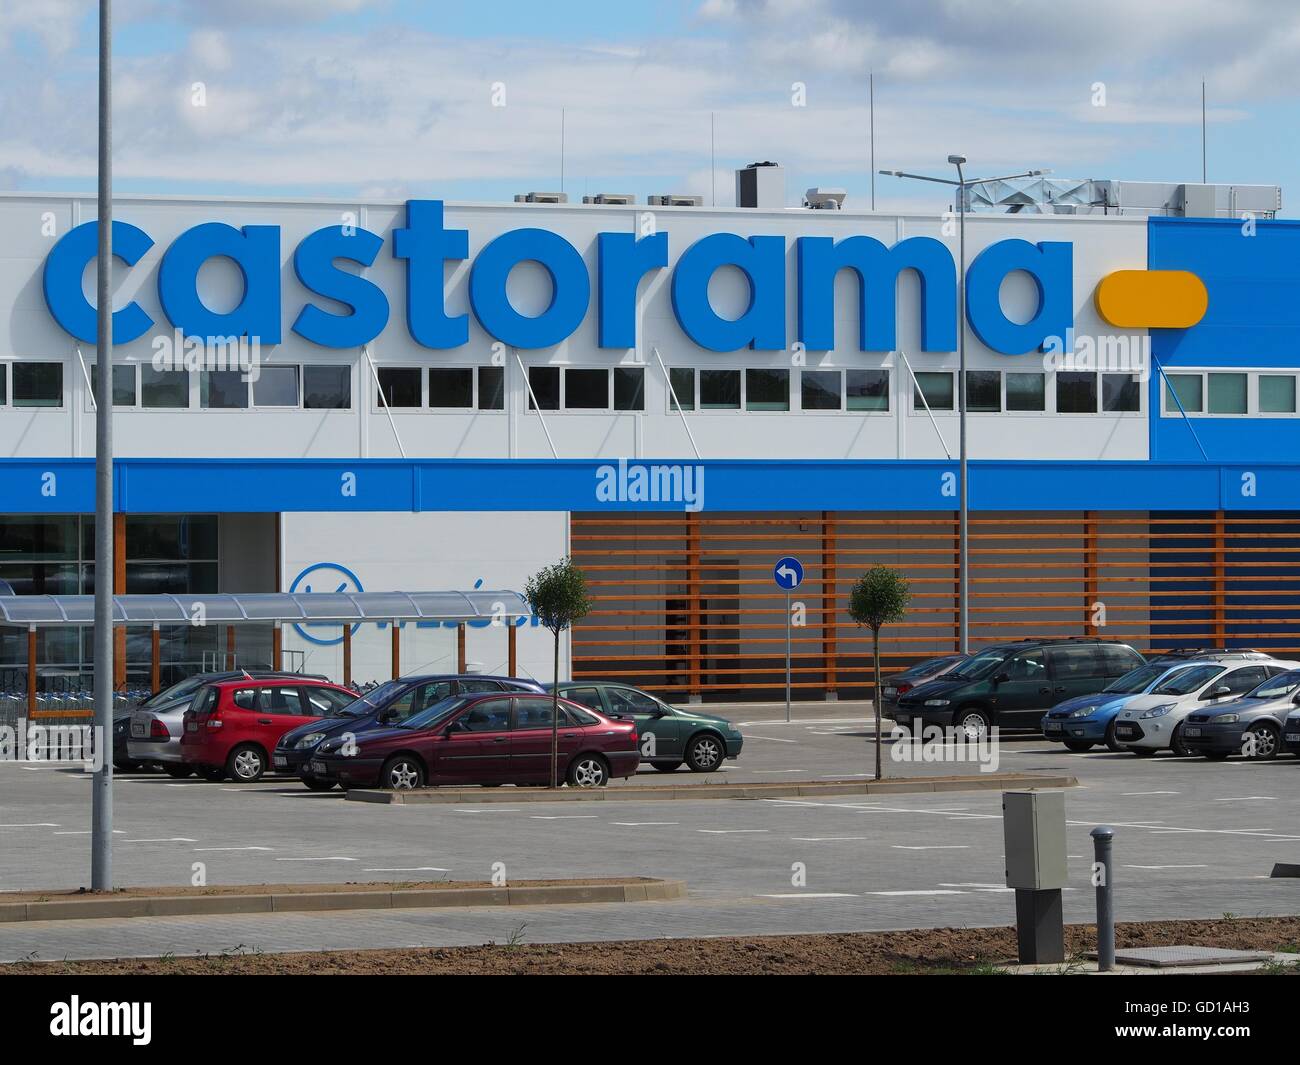 Castorama supermarket in Radom, Poland Stock Photo - Alamy